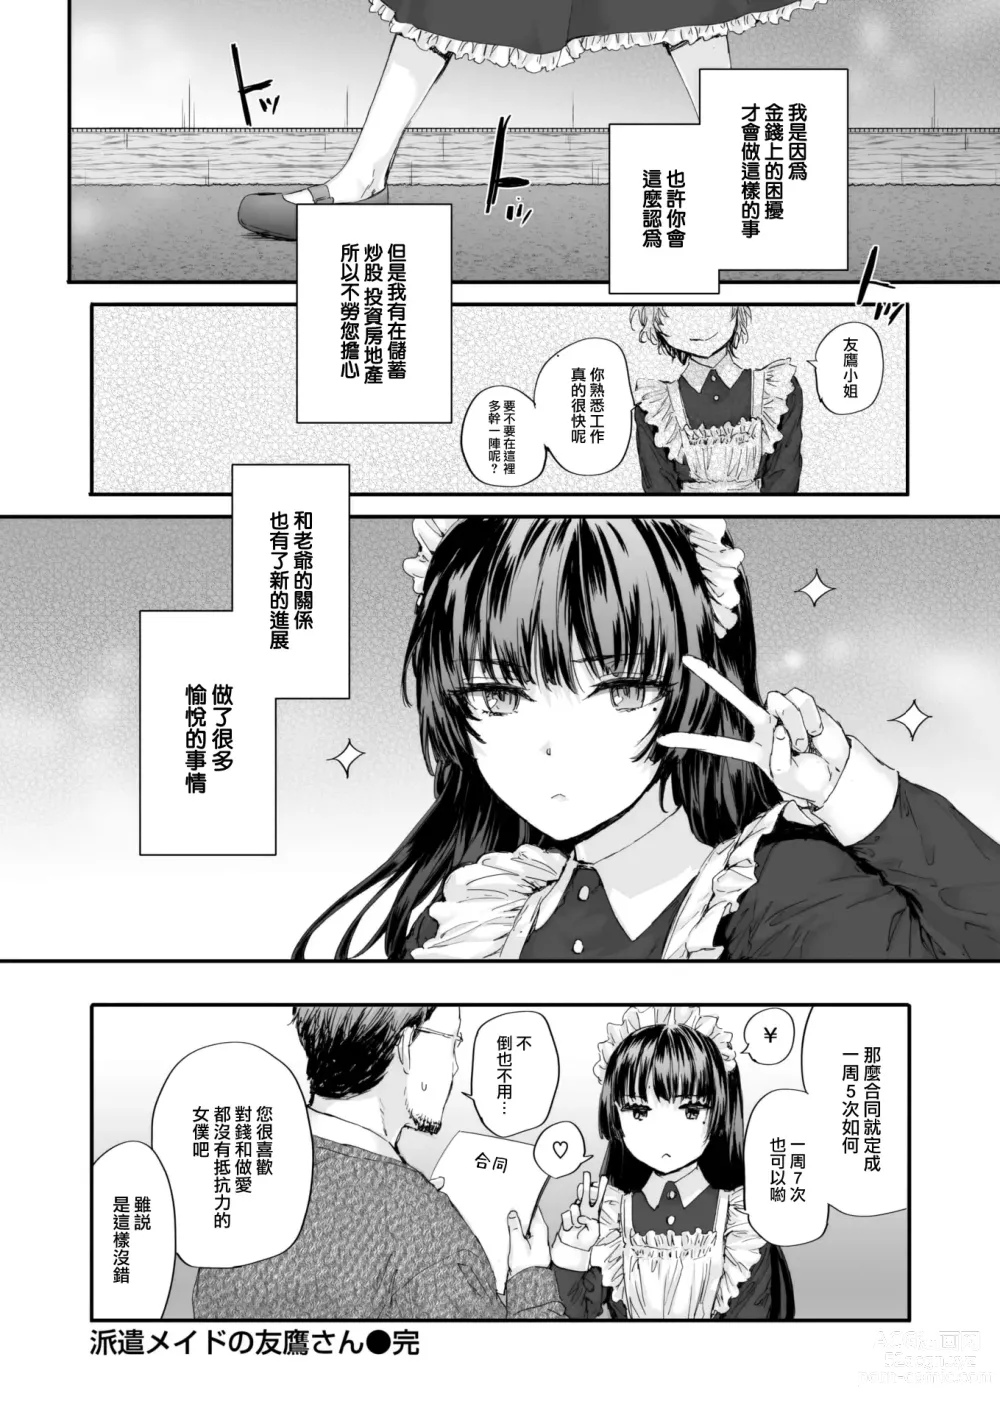 Page 23 of manga Haken Maid no Tomotakasan